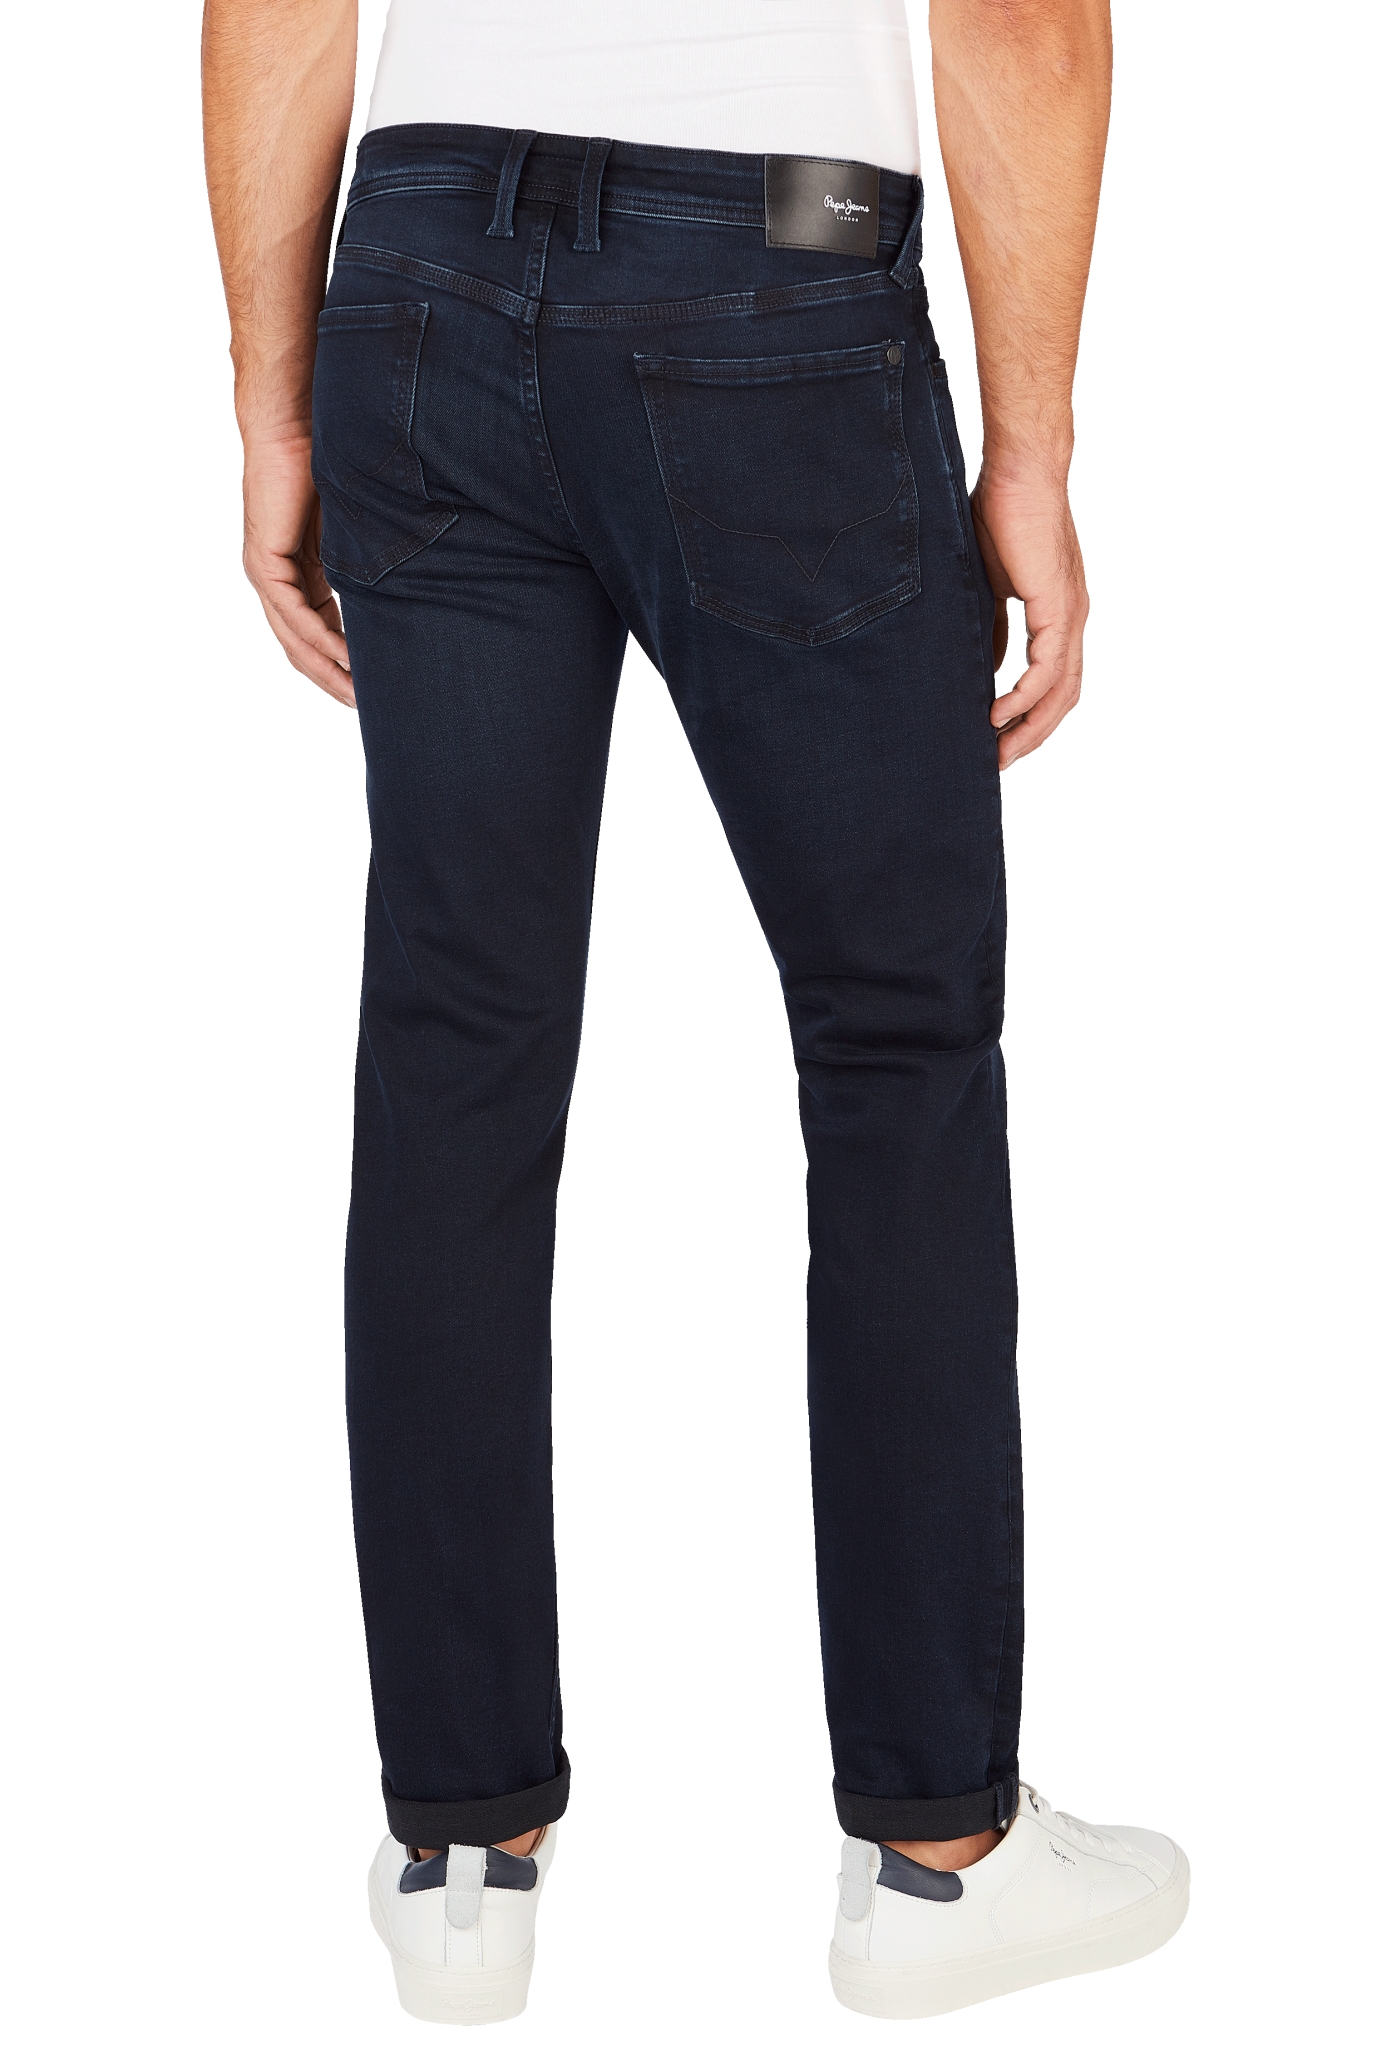 PEPE JEANS 5-Pocket Jeans HATCH REGULAR 10742958 kaufen | WÖHRL